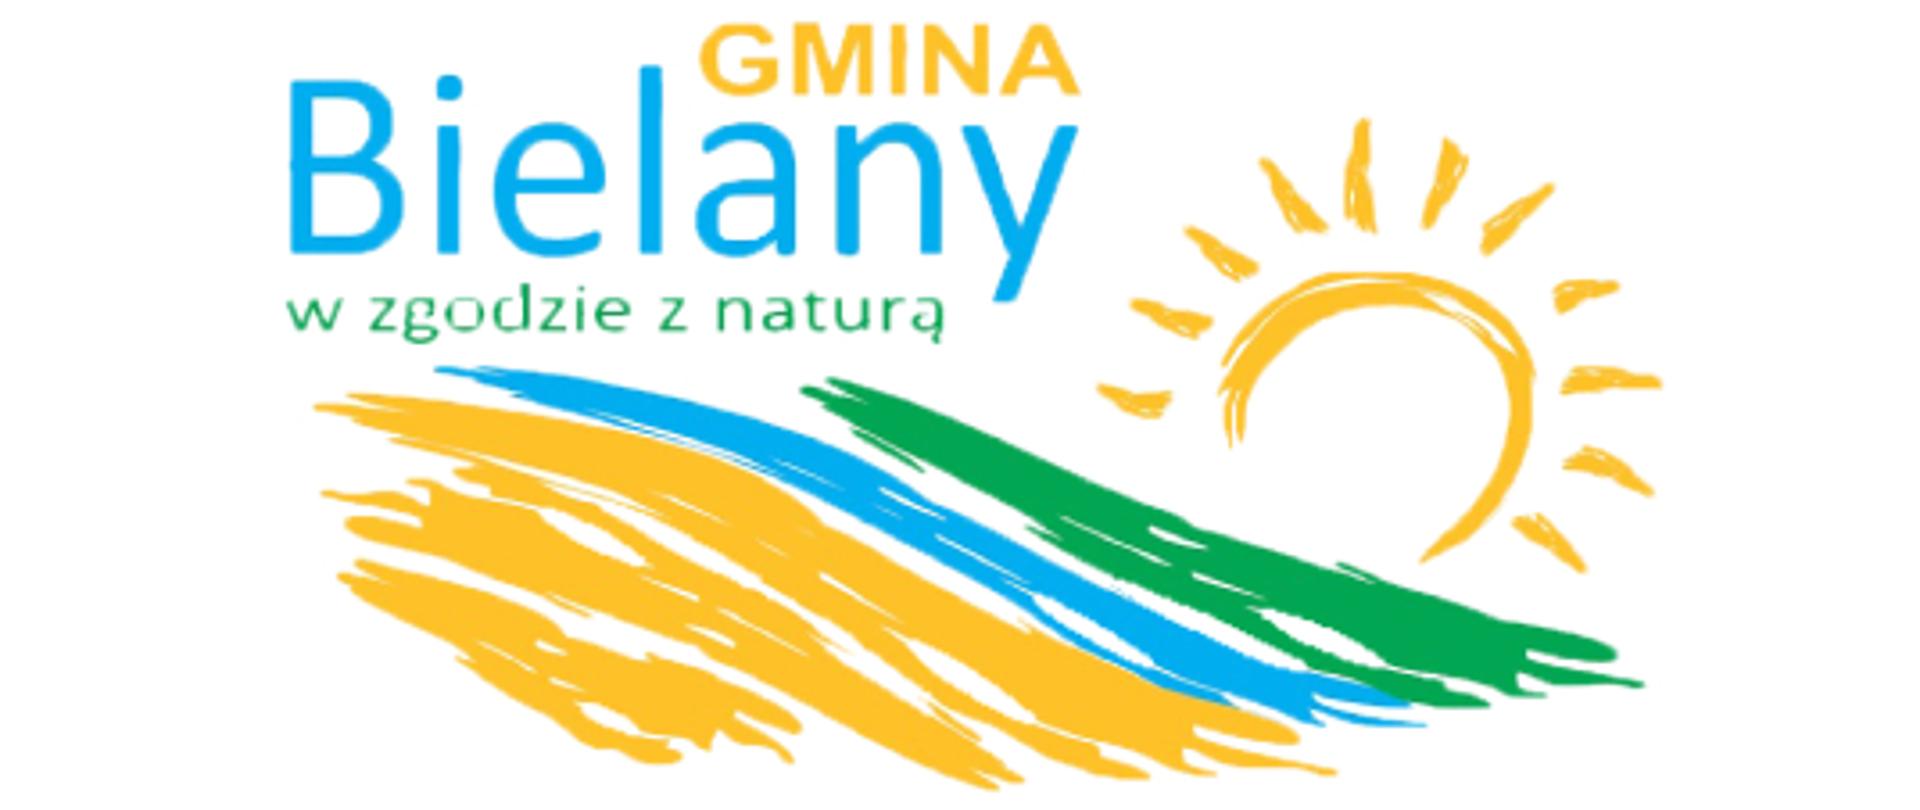 Żółto - niebiesko - zielone - logo